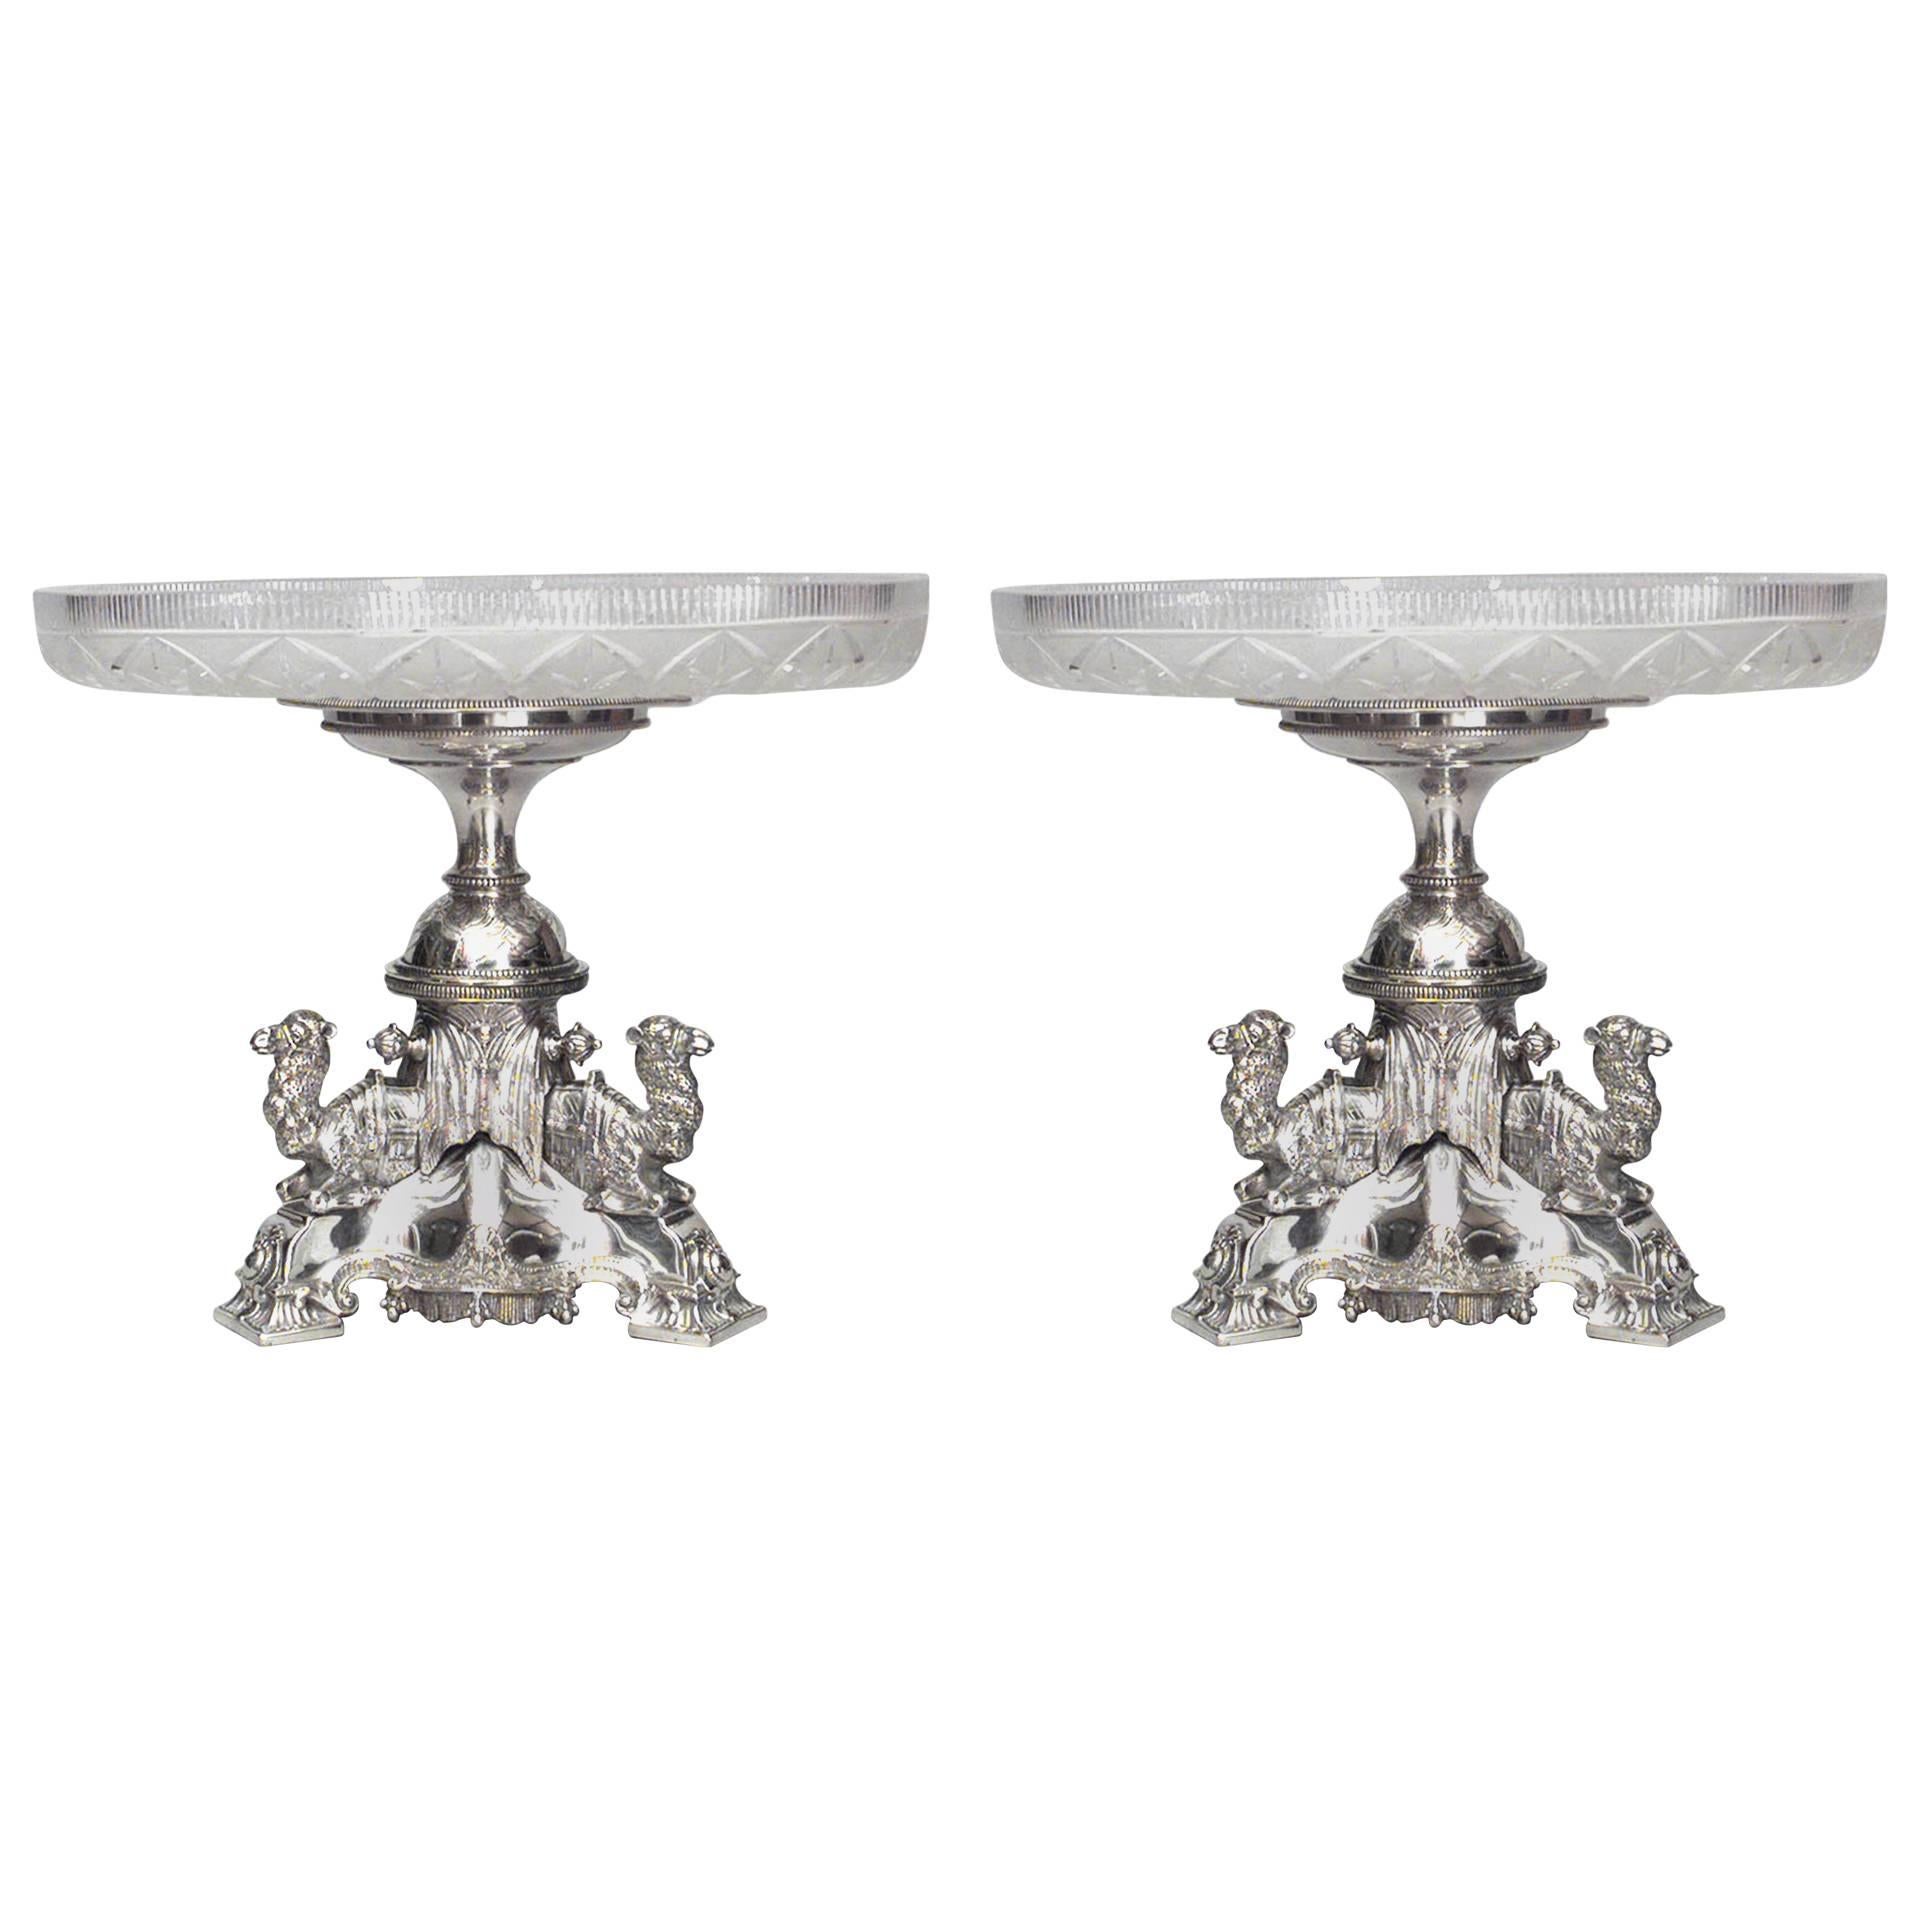 Paire de centres de table camel en métal argenté de style victorien anglais